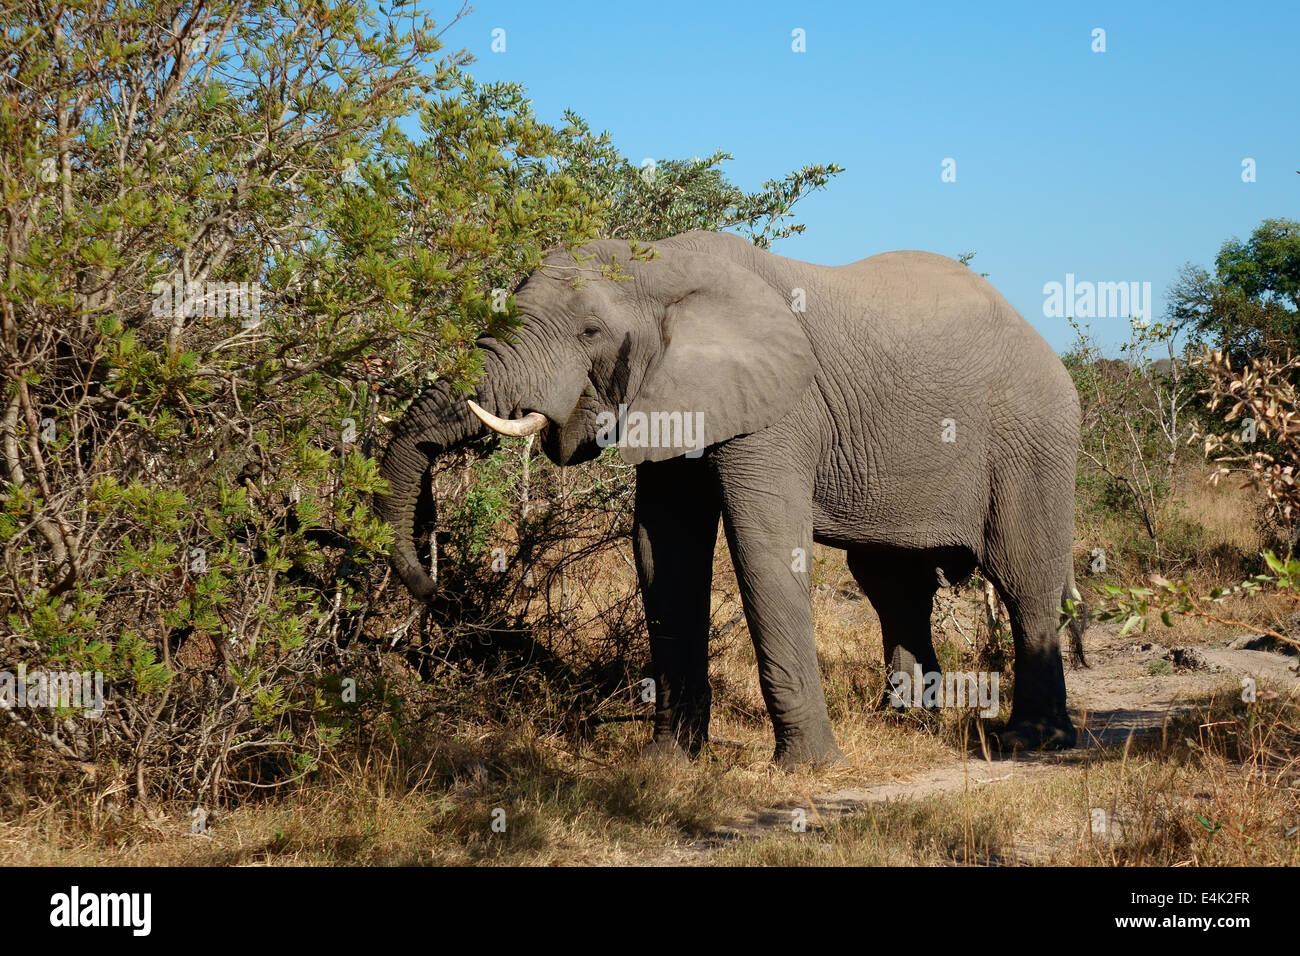 L'éléphant africain (Loxodonta africana) se nourrissant d'un arbre, Sabie-Sand nature reserve, Afrique du Sud Banque D'Images